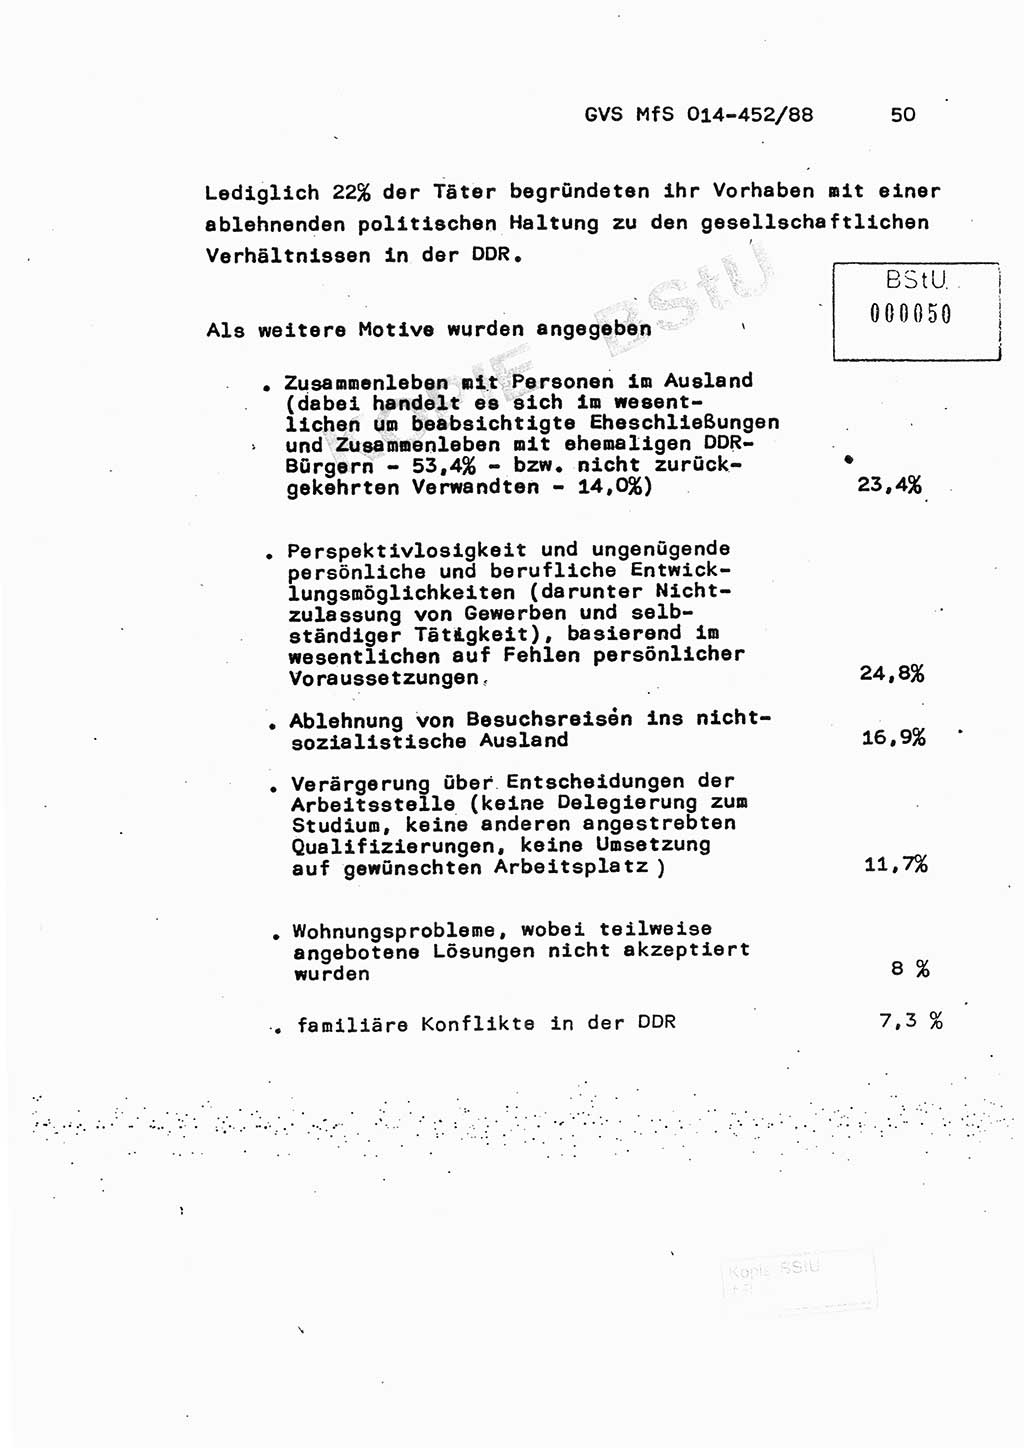 Jahresbericht der Hauptabteilung (HA) Ⅸ 1987, Einschätzung der Wirksamkeit der Untersuchungsarbeit im Jahre 1987, Ministerium für Staatssicherheit (MfS) der Deutschen Demokratischen Republik (DDR), Hauptabteilung Ⅸ, Geheime Verschlußsache (GVS) o014-452/88, Berlin 1988, Seite 50 (Einsch. MfS DDR HA Ⅸ GVS o014-452/88 1987, S. 50)